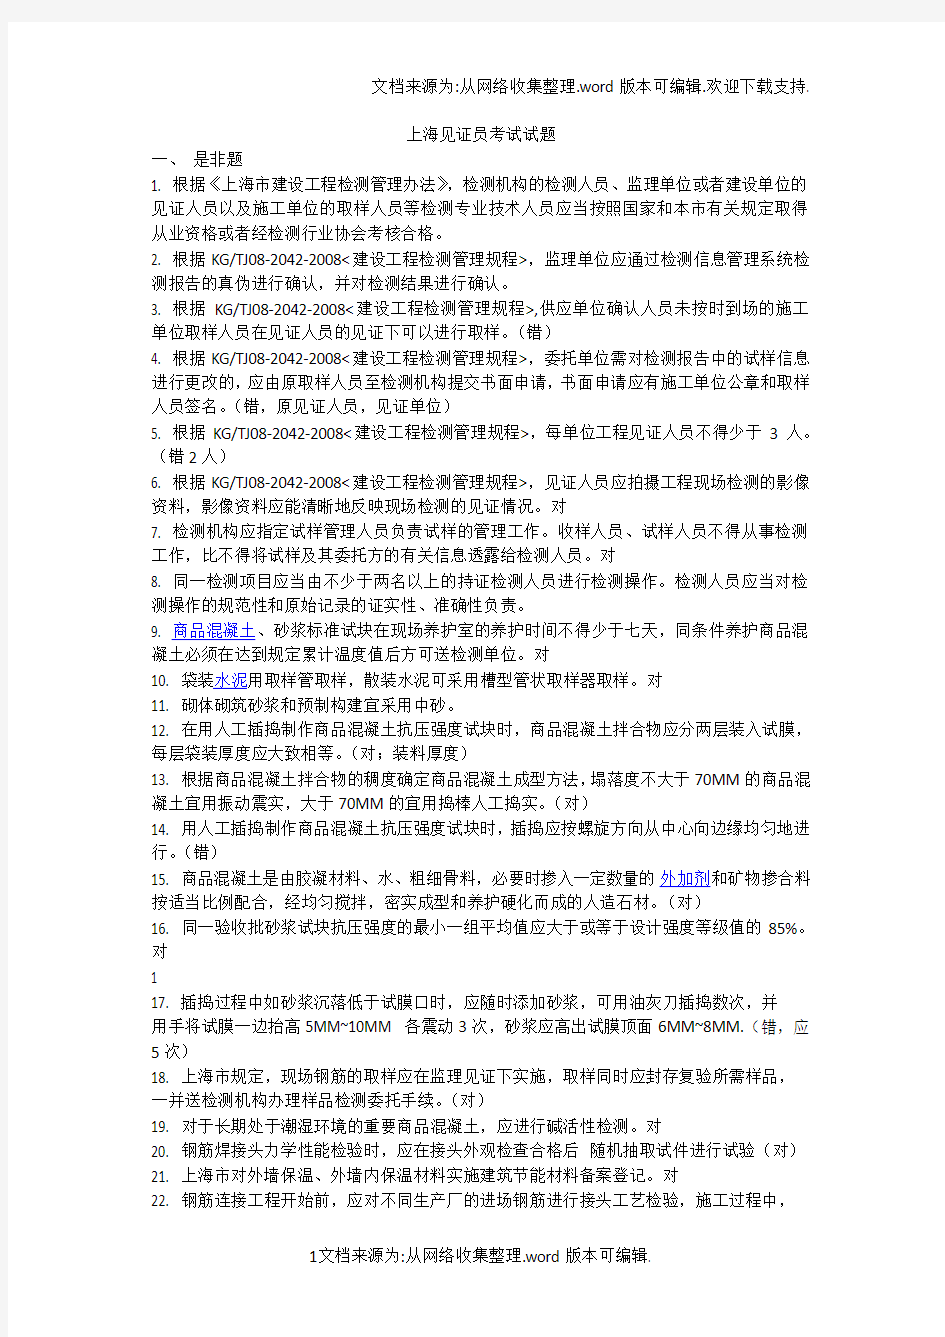 2018年上海见证员考试试题(供参考)